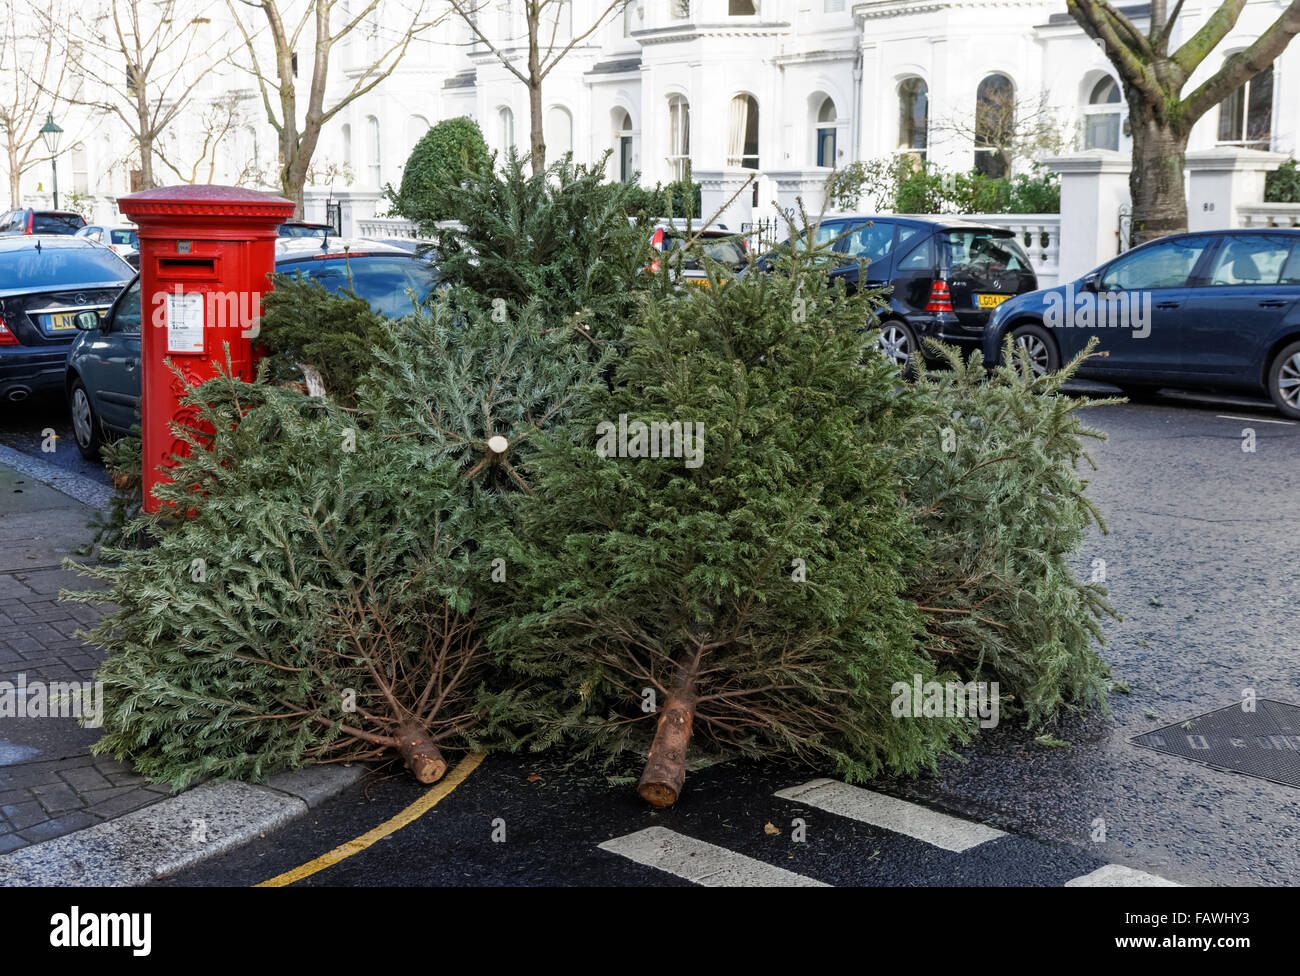 Arbres de Noël à gauche dans la rue, Londres Angleterre Royaume-Uni UK Banque D'Images